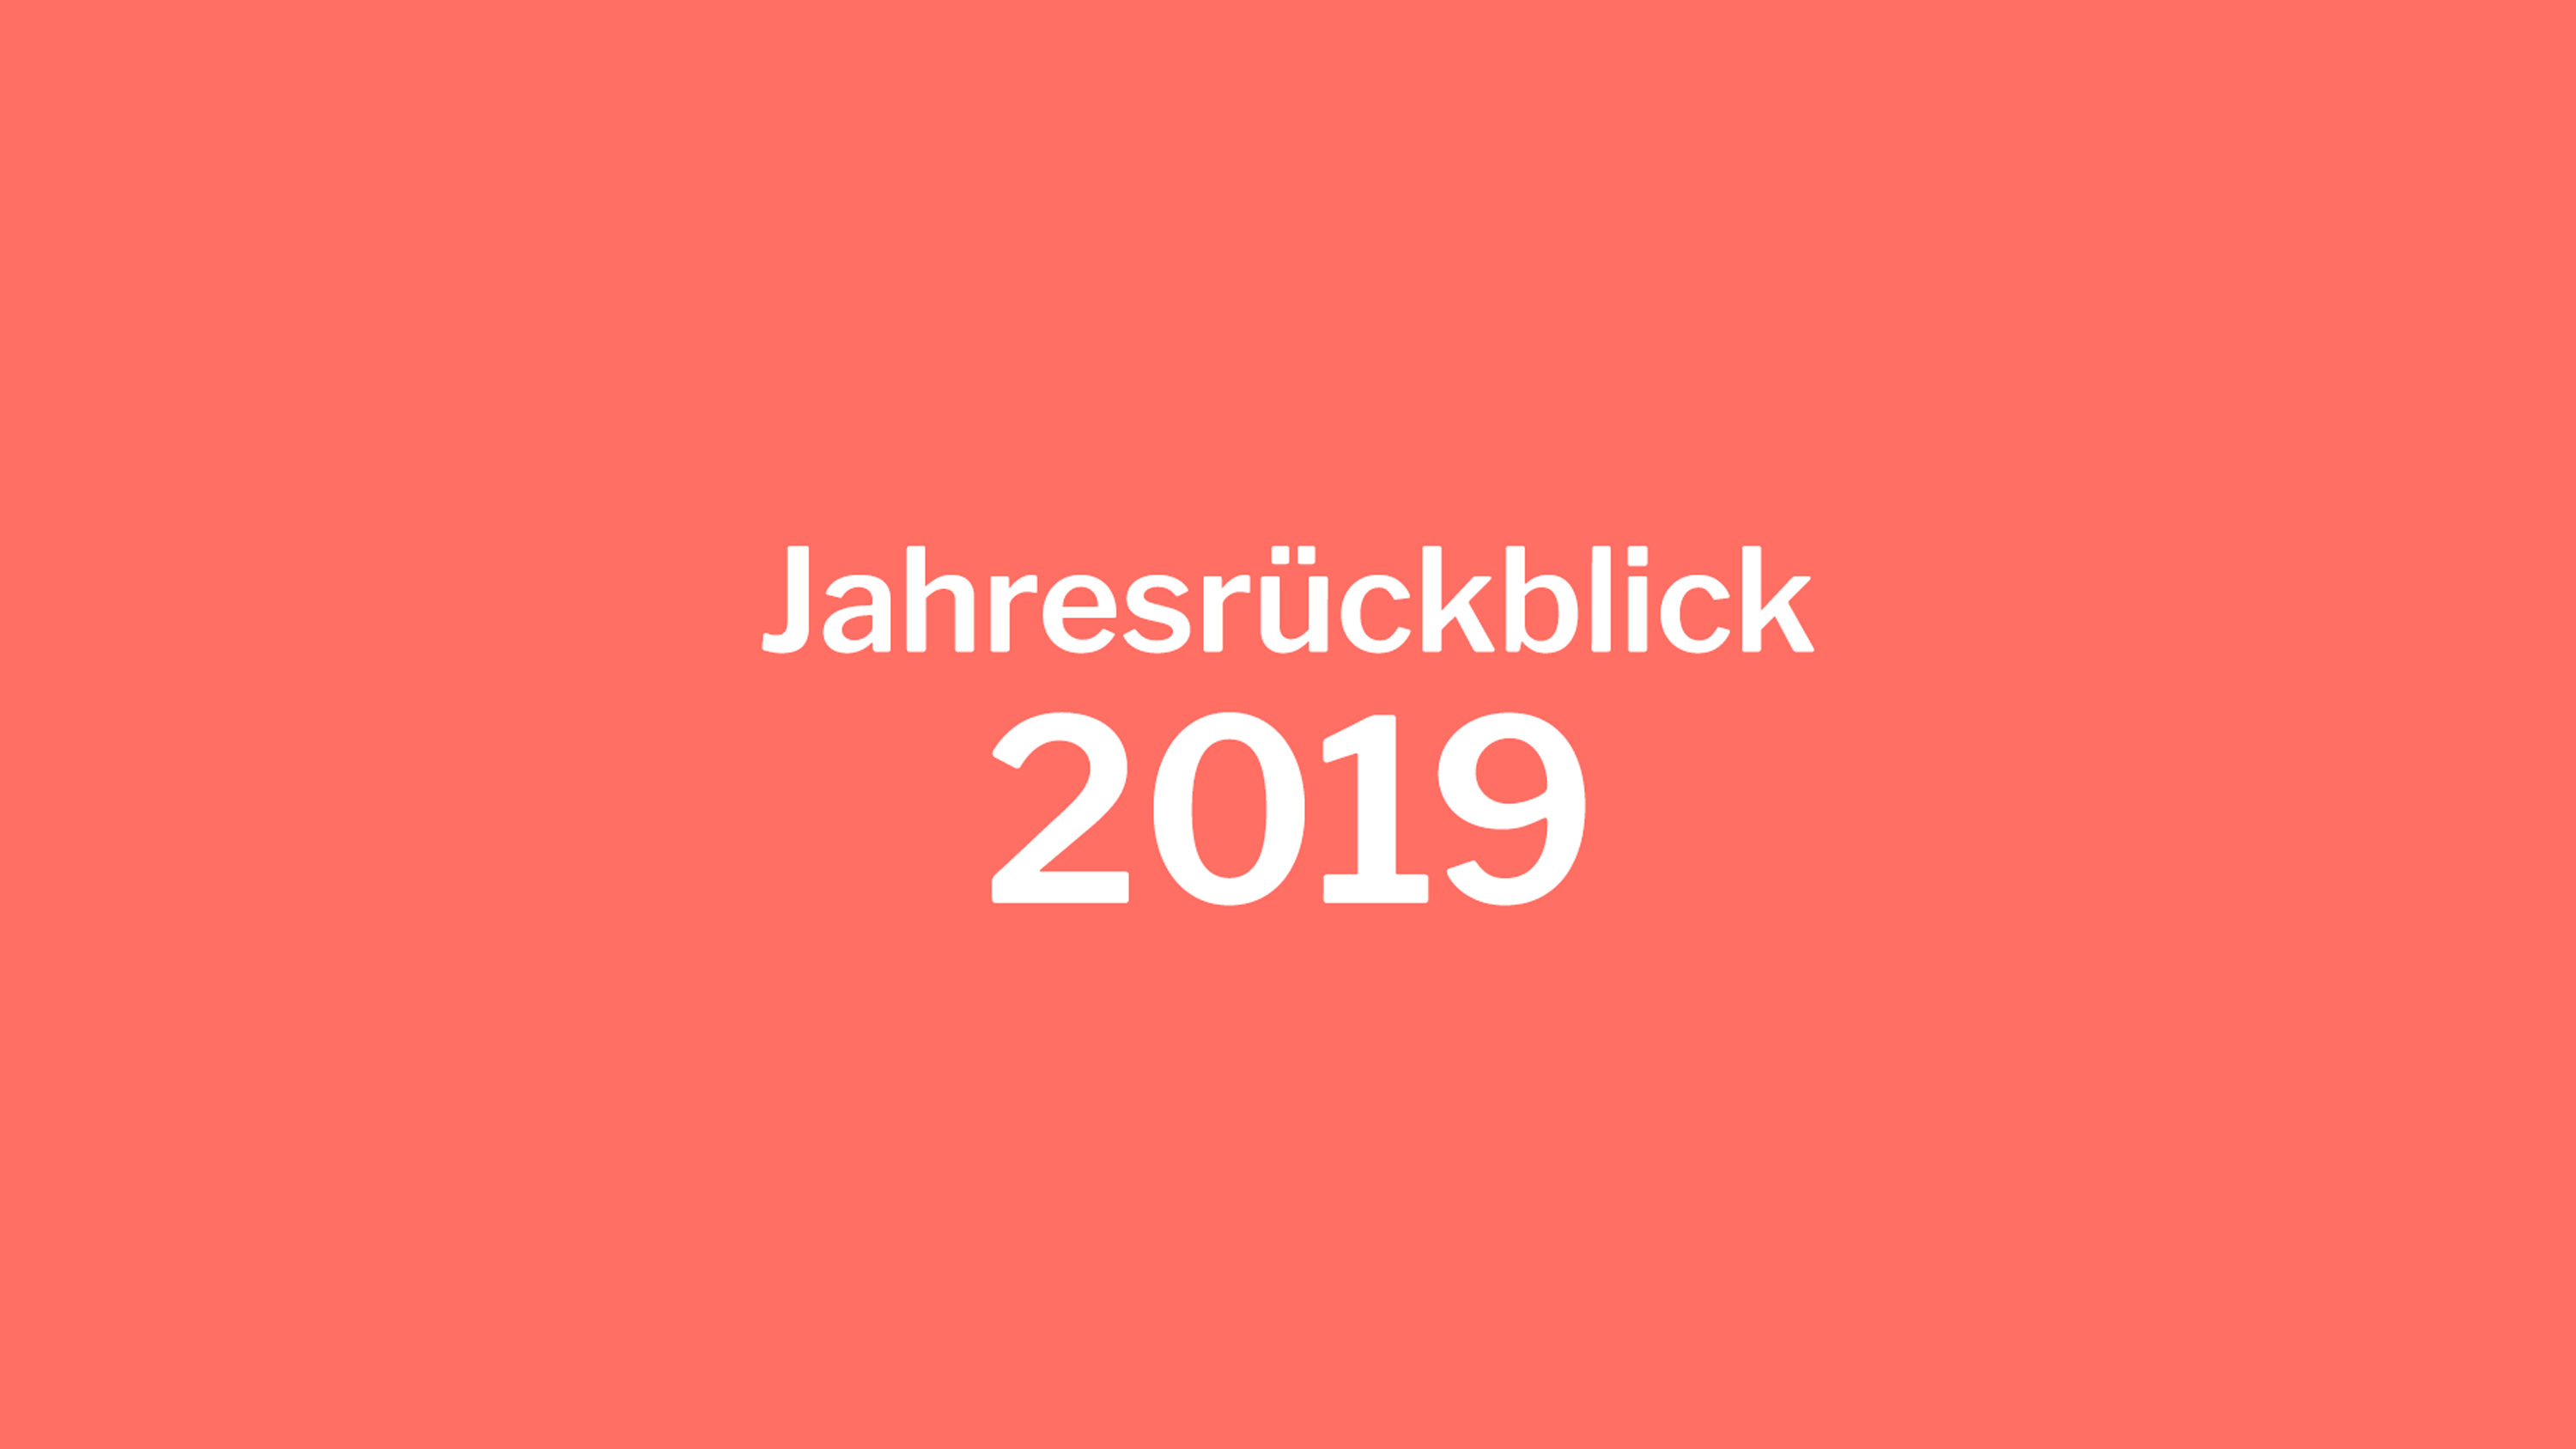 Jahresrückblick 2019